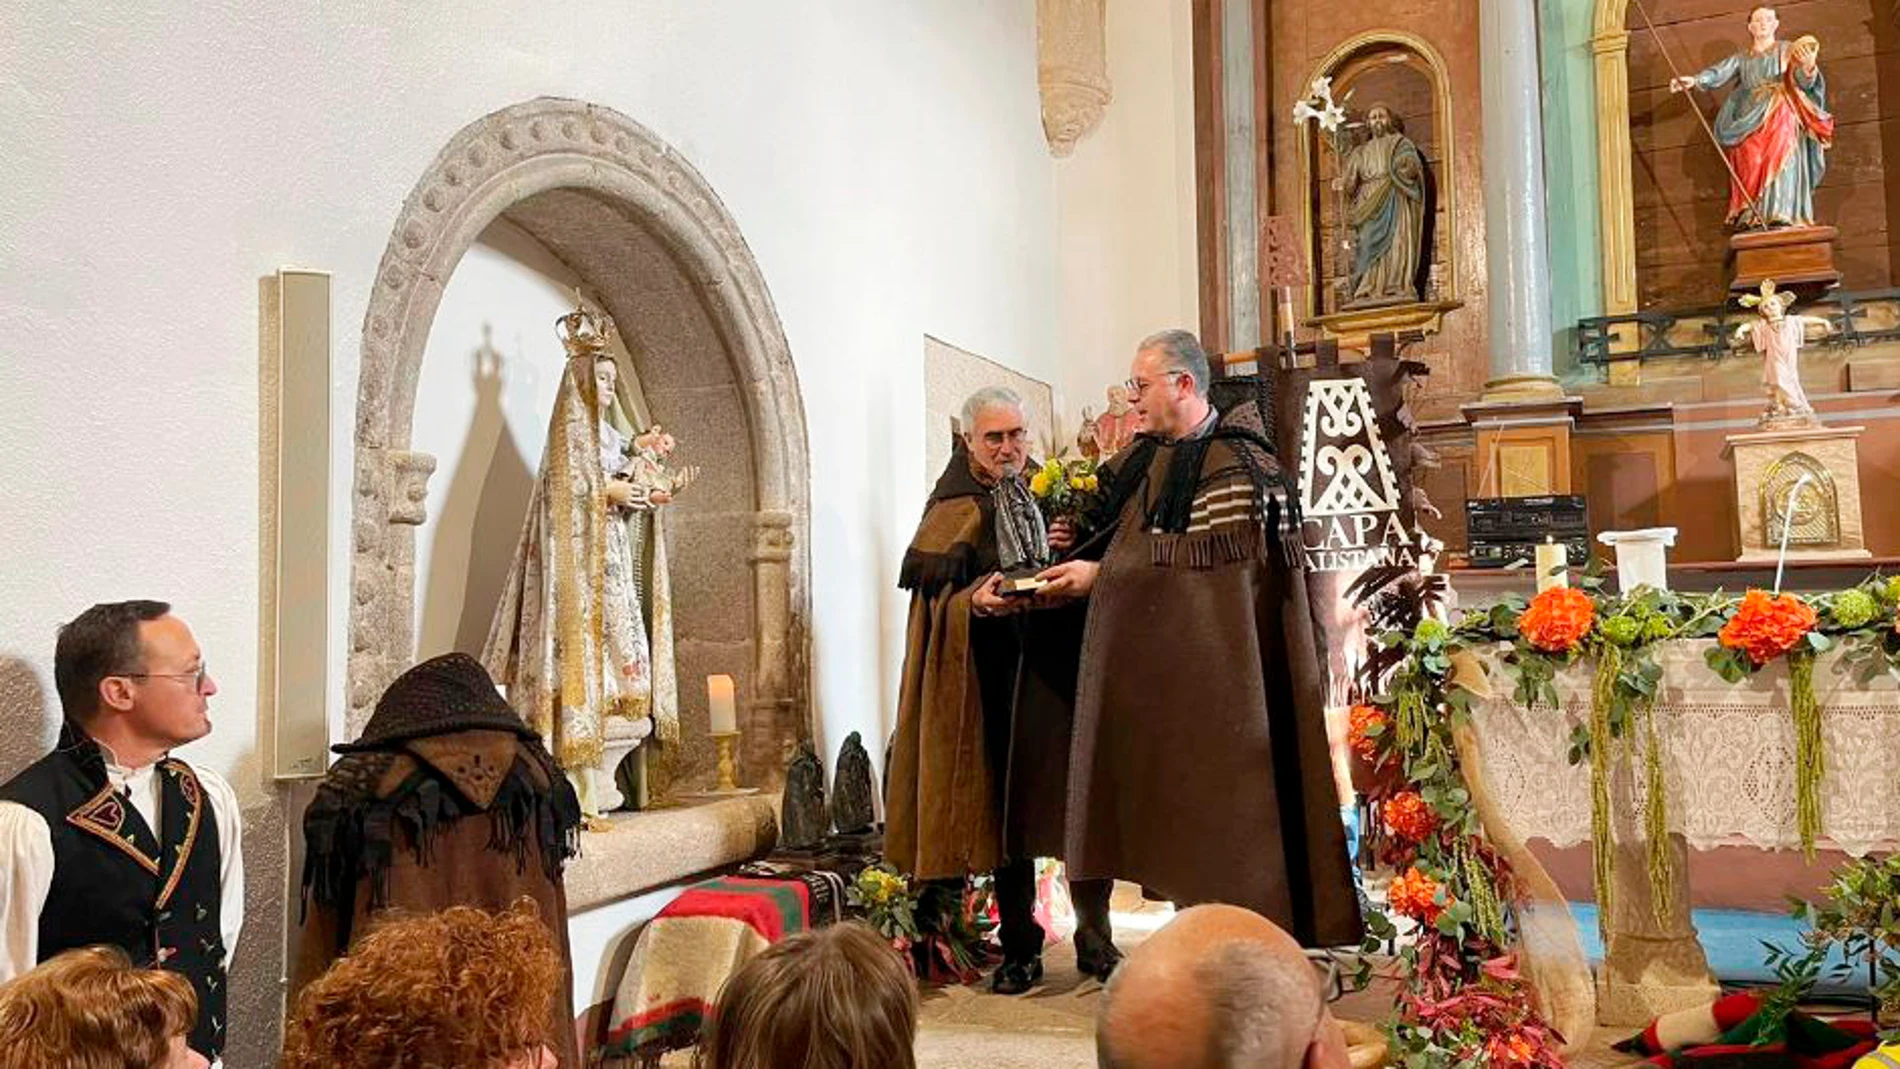 IX Jornada de Exaltación de la Capa Alistana que rinde homenaje a las víctimas de los incendios forestales del pasado verano